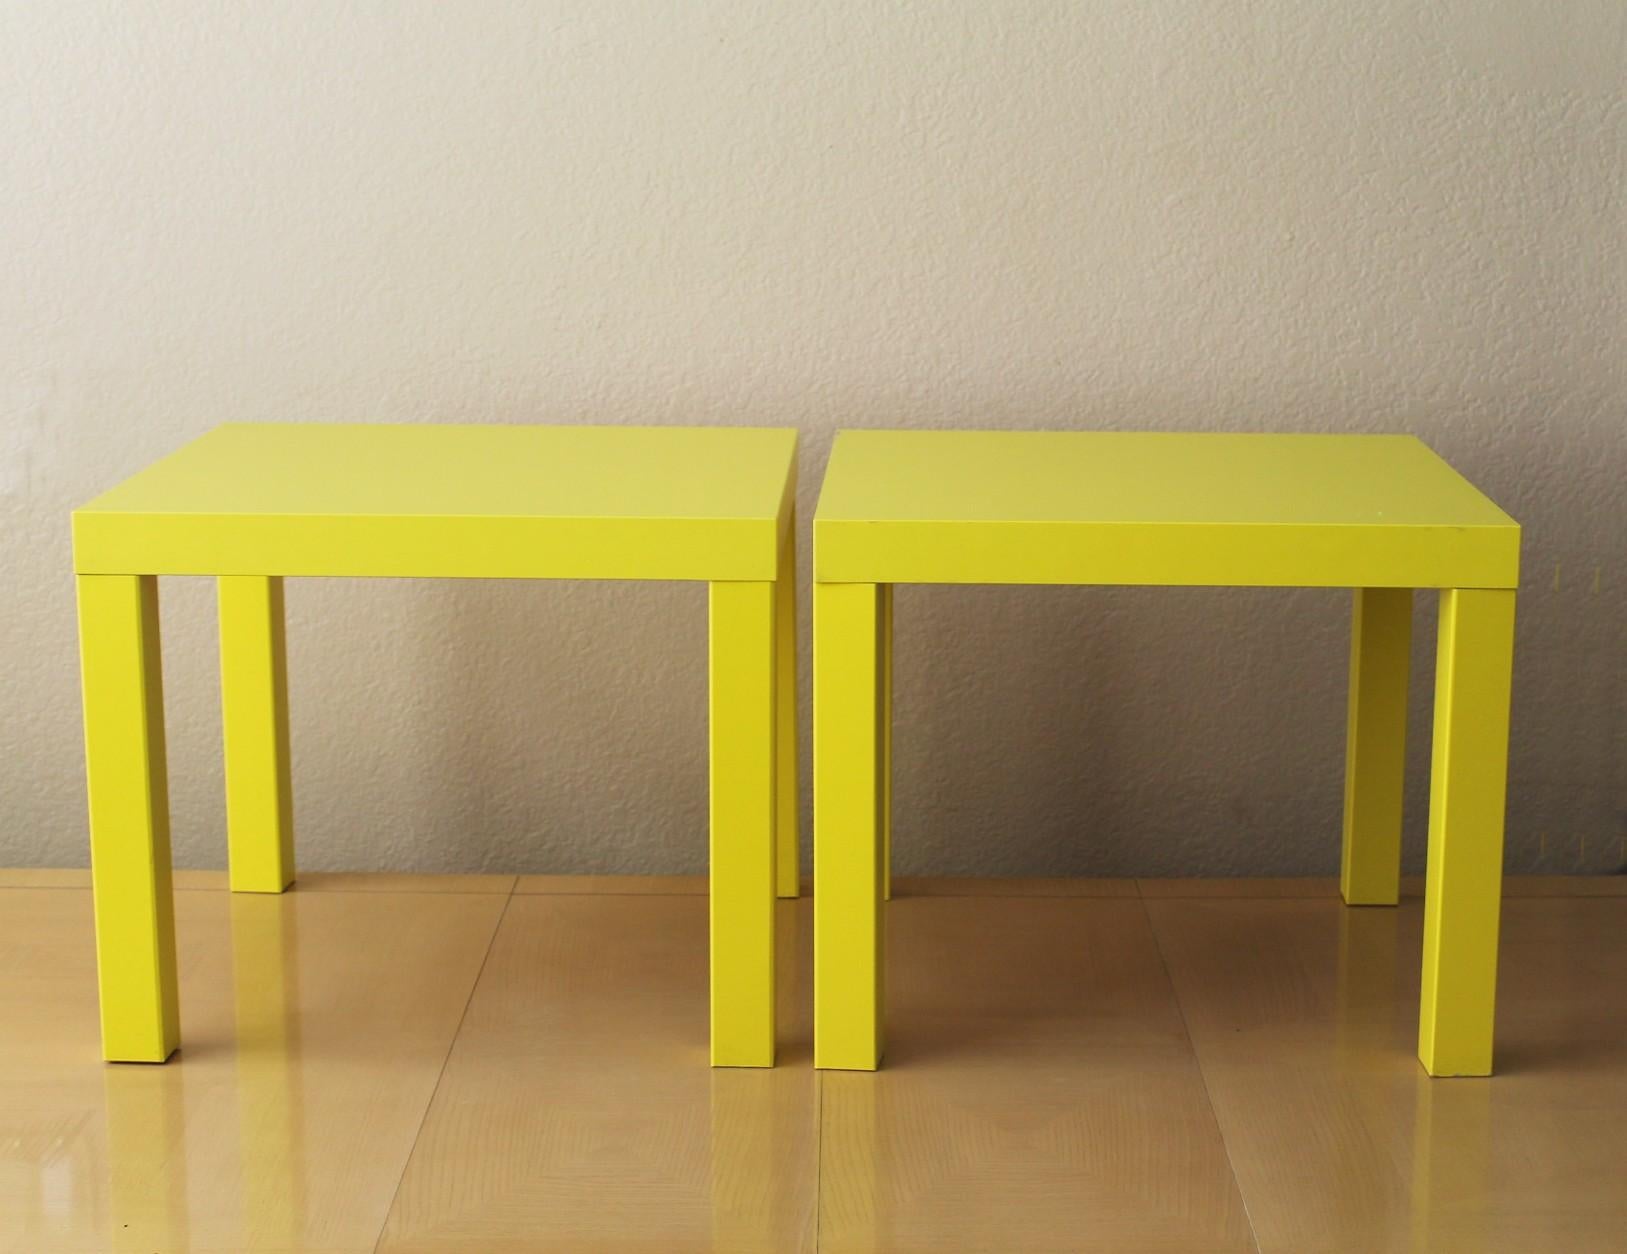 Fin du 20e siècle Paire rare de tables d'extrémité Ikea jaune, Suède 1999 Art Memphis Postmodern Decor en vente